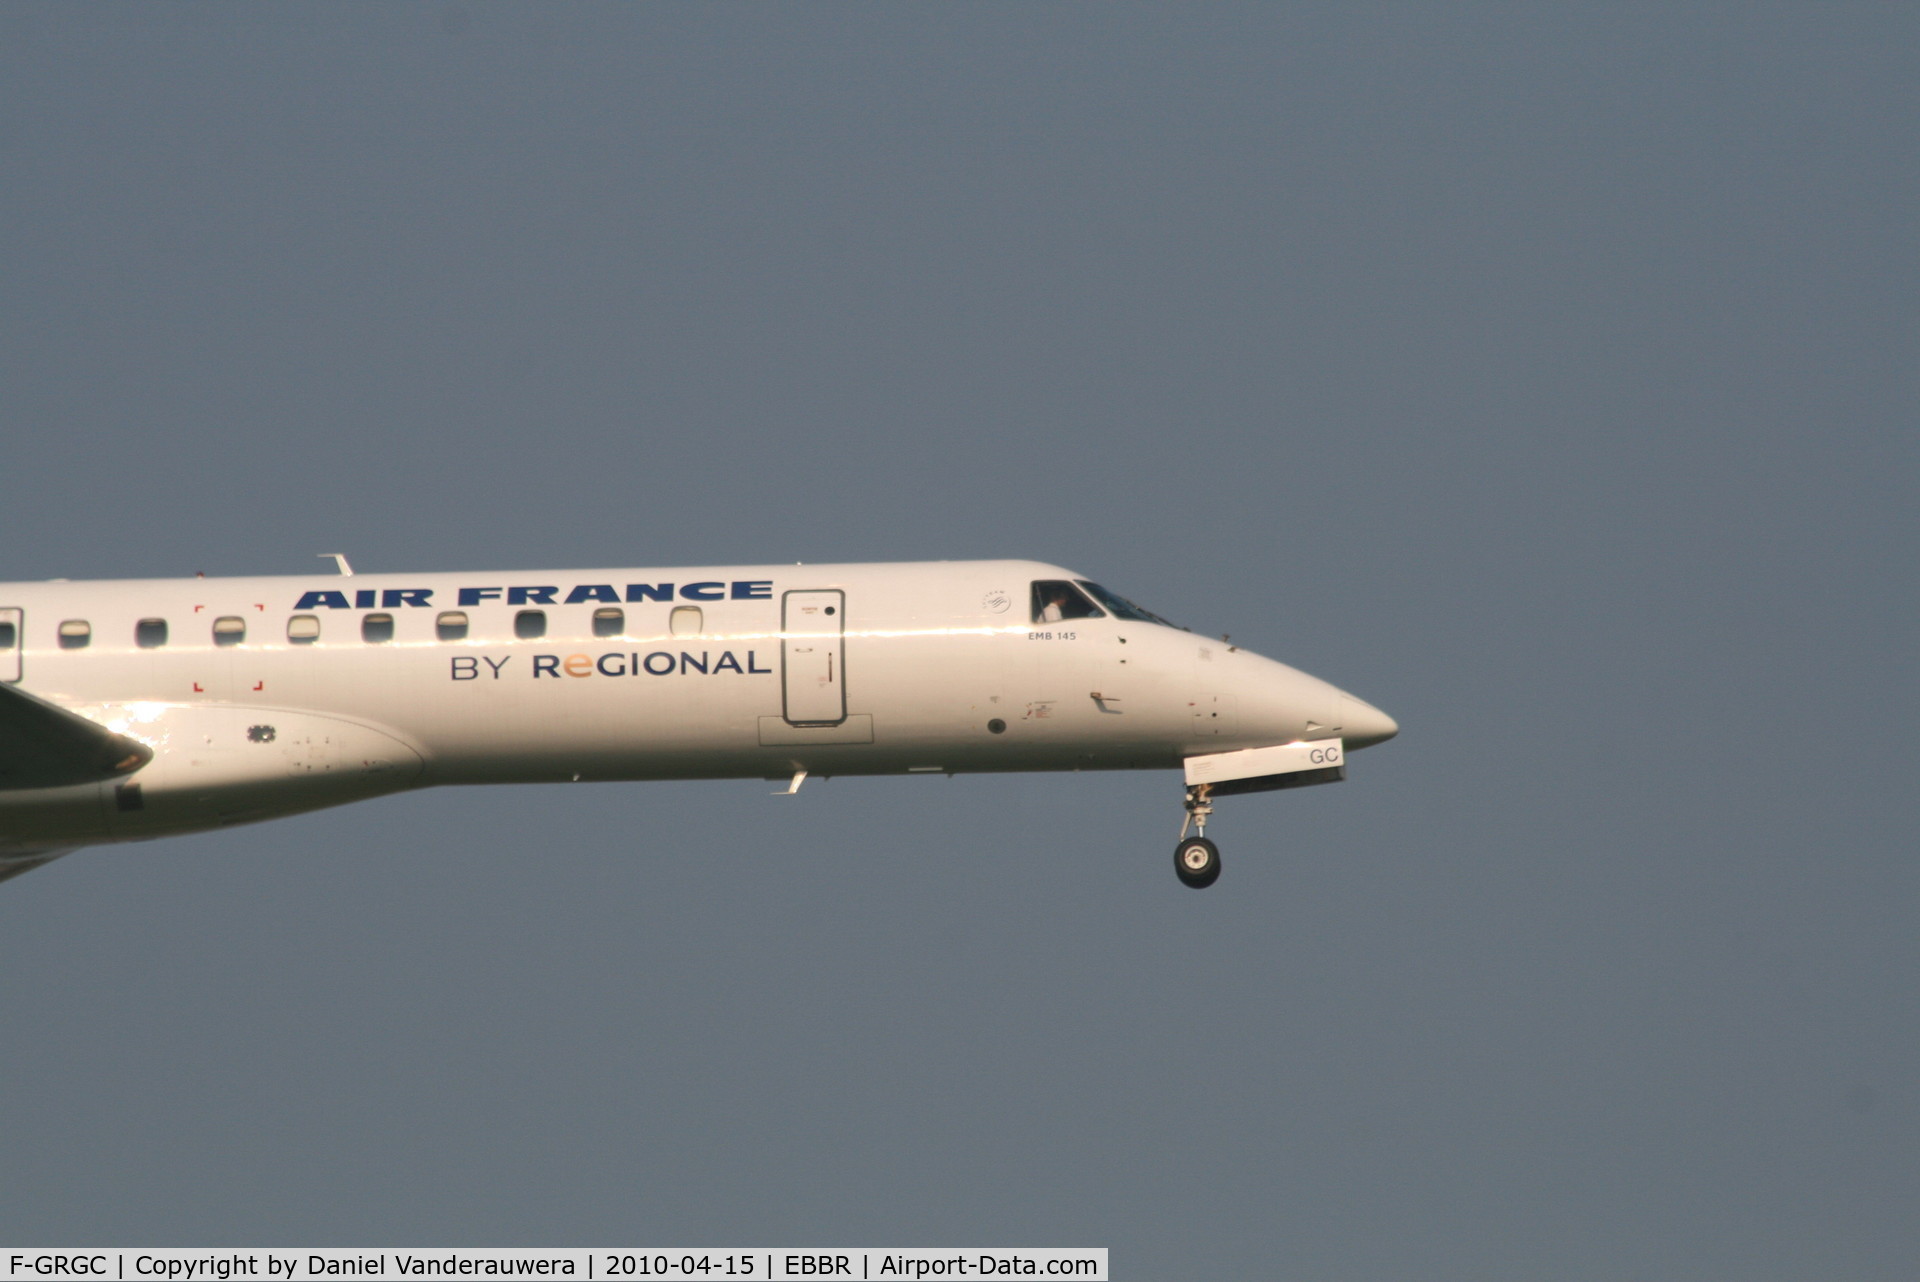 F-GRGC, 1997 Embraer EMB-145EU (ERJ-145EU) C/N 145012, Arrival of flight AF5402 to RWY 02